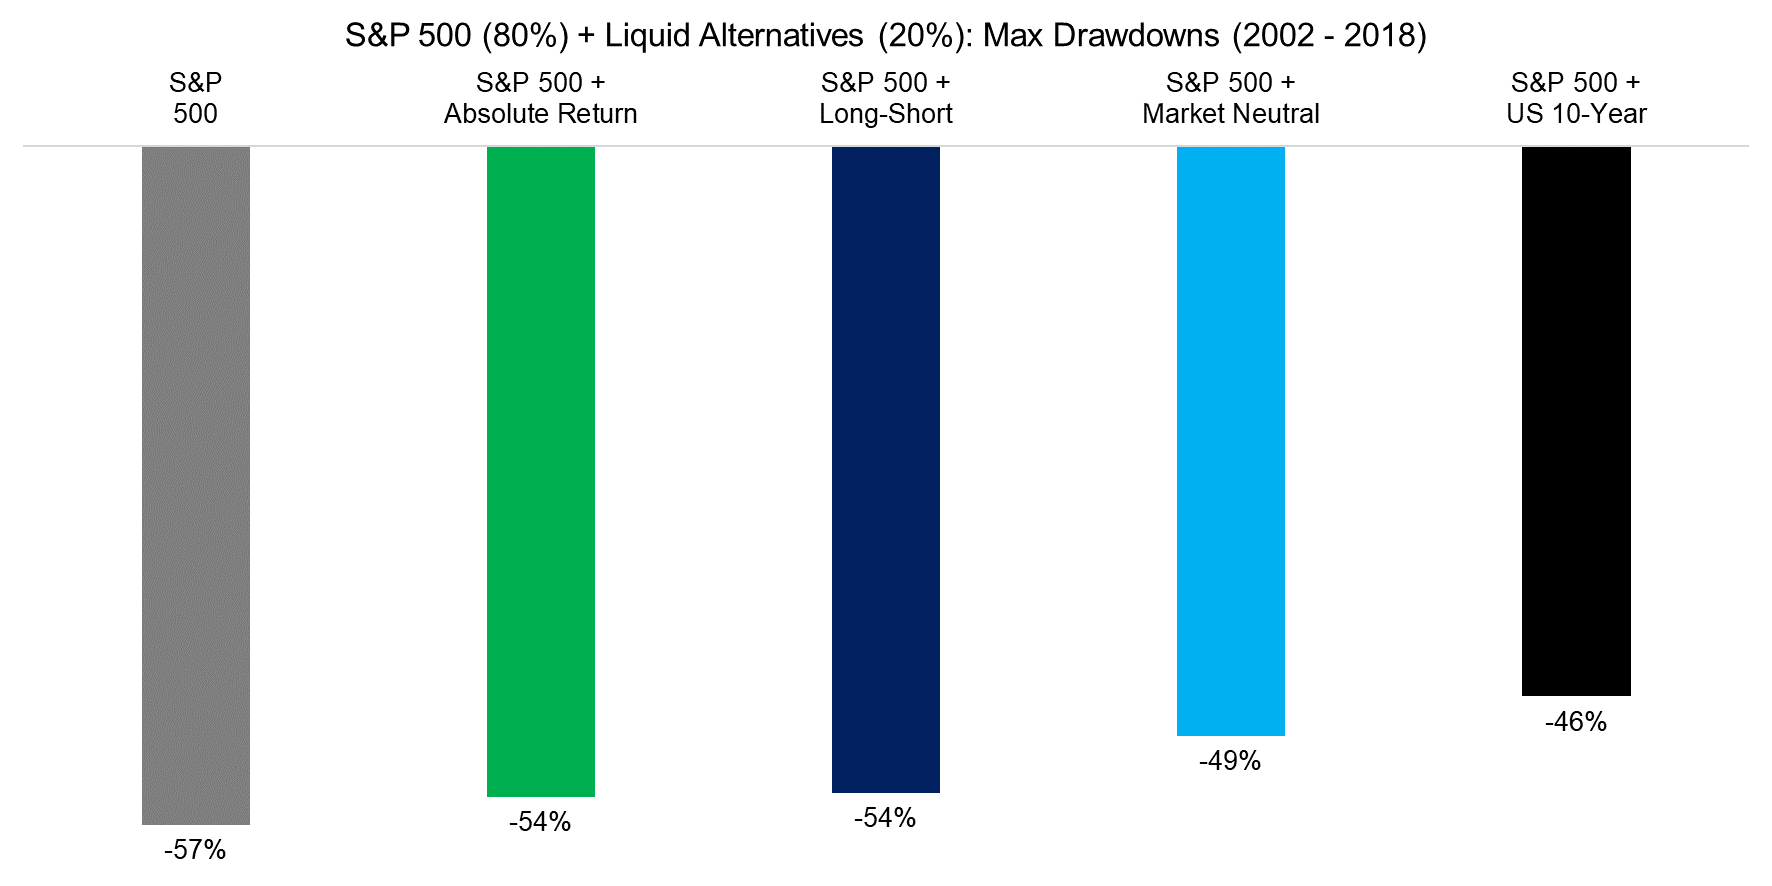 S&P 500 (80%) + Liquid Alternatives (20%) Max Drawdowns (2002 - 2018)